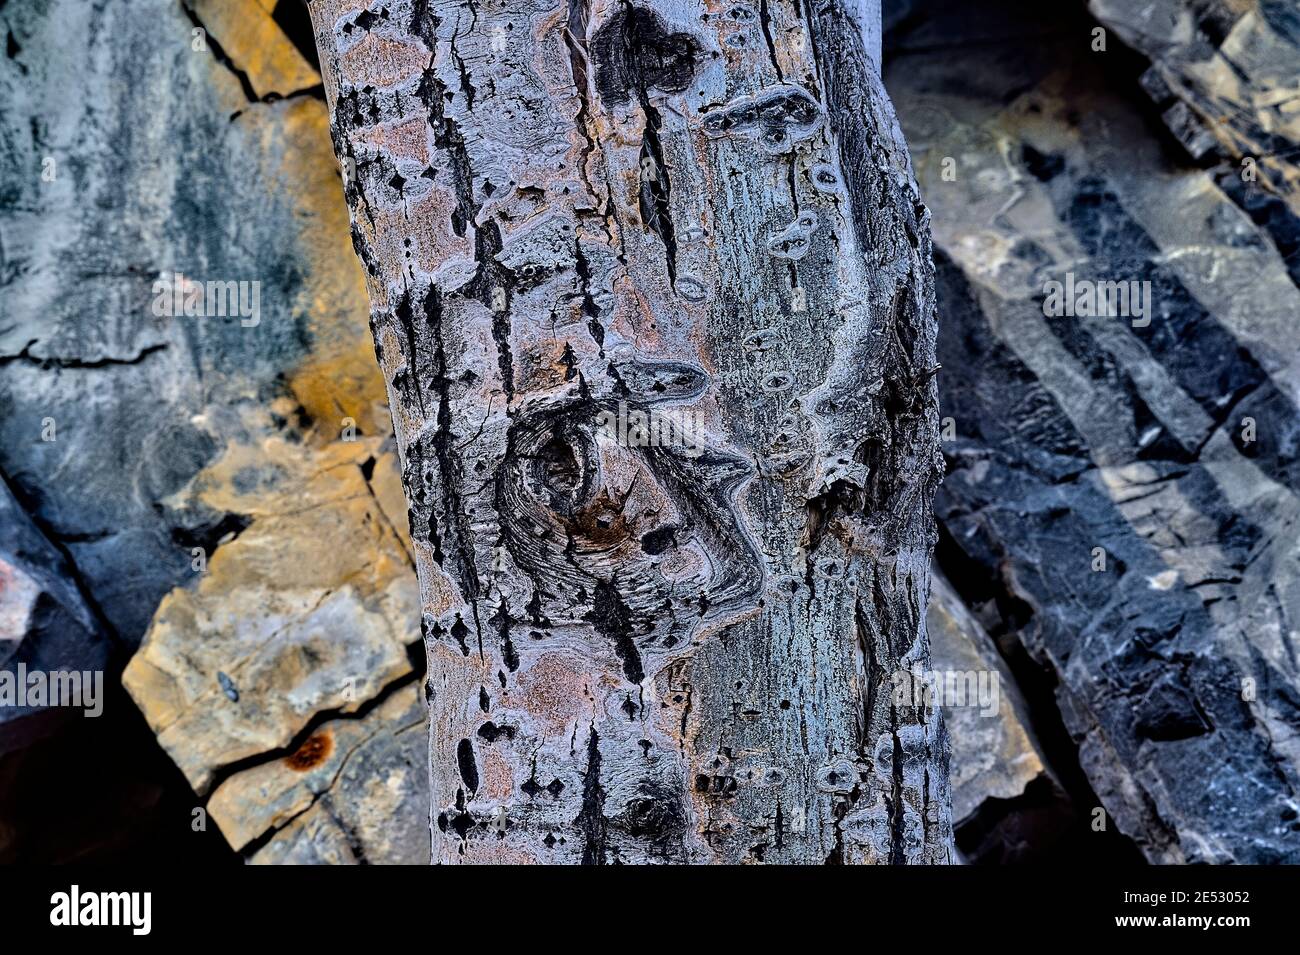 Un tronc d'arbre mort contre une surface rocheuse dans le parc national Jasper Alberta Canada. Banque D'Images